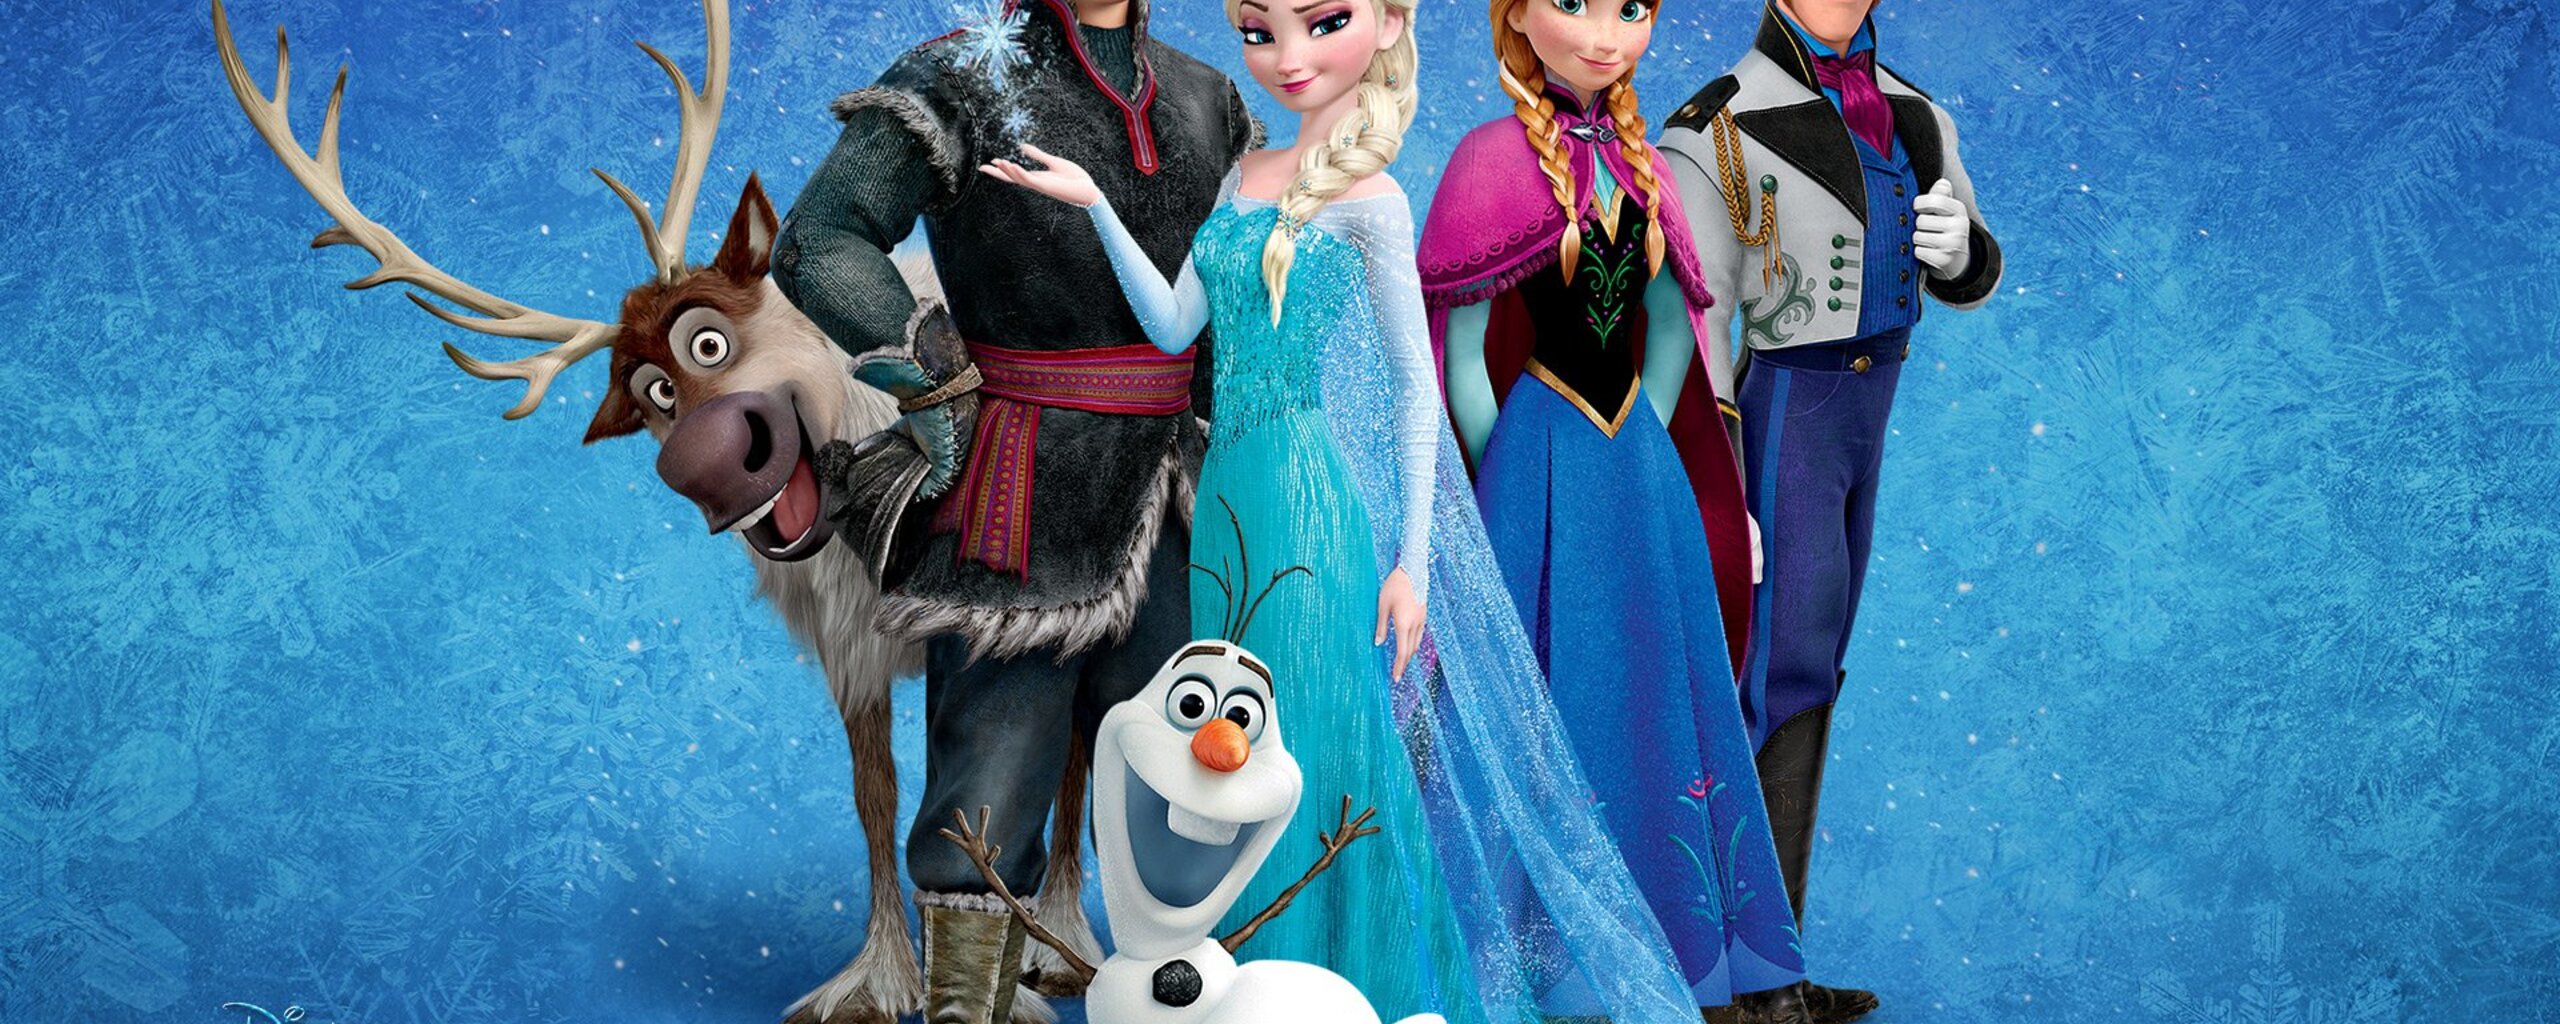 Frozen Movie HD In 2560x1024 Resolution. frozen-movie-hd.jpg. 